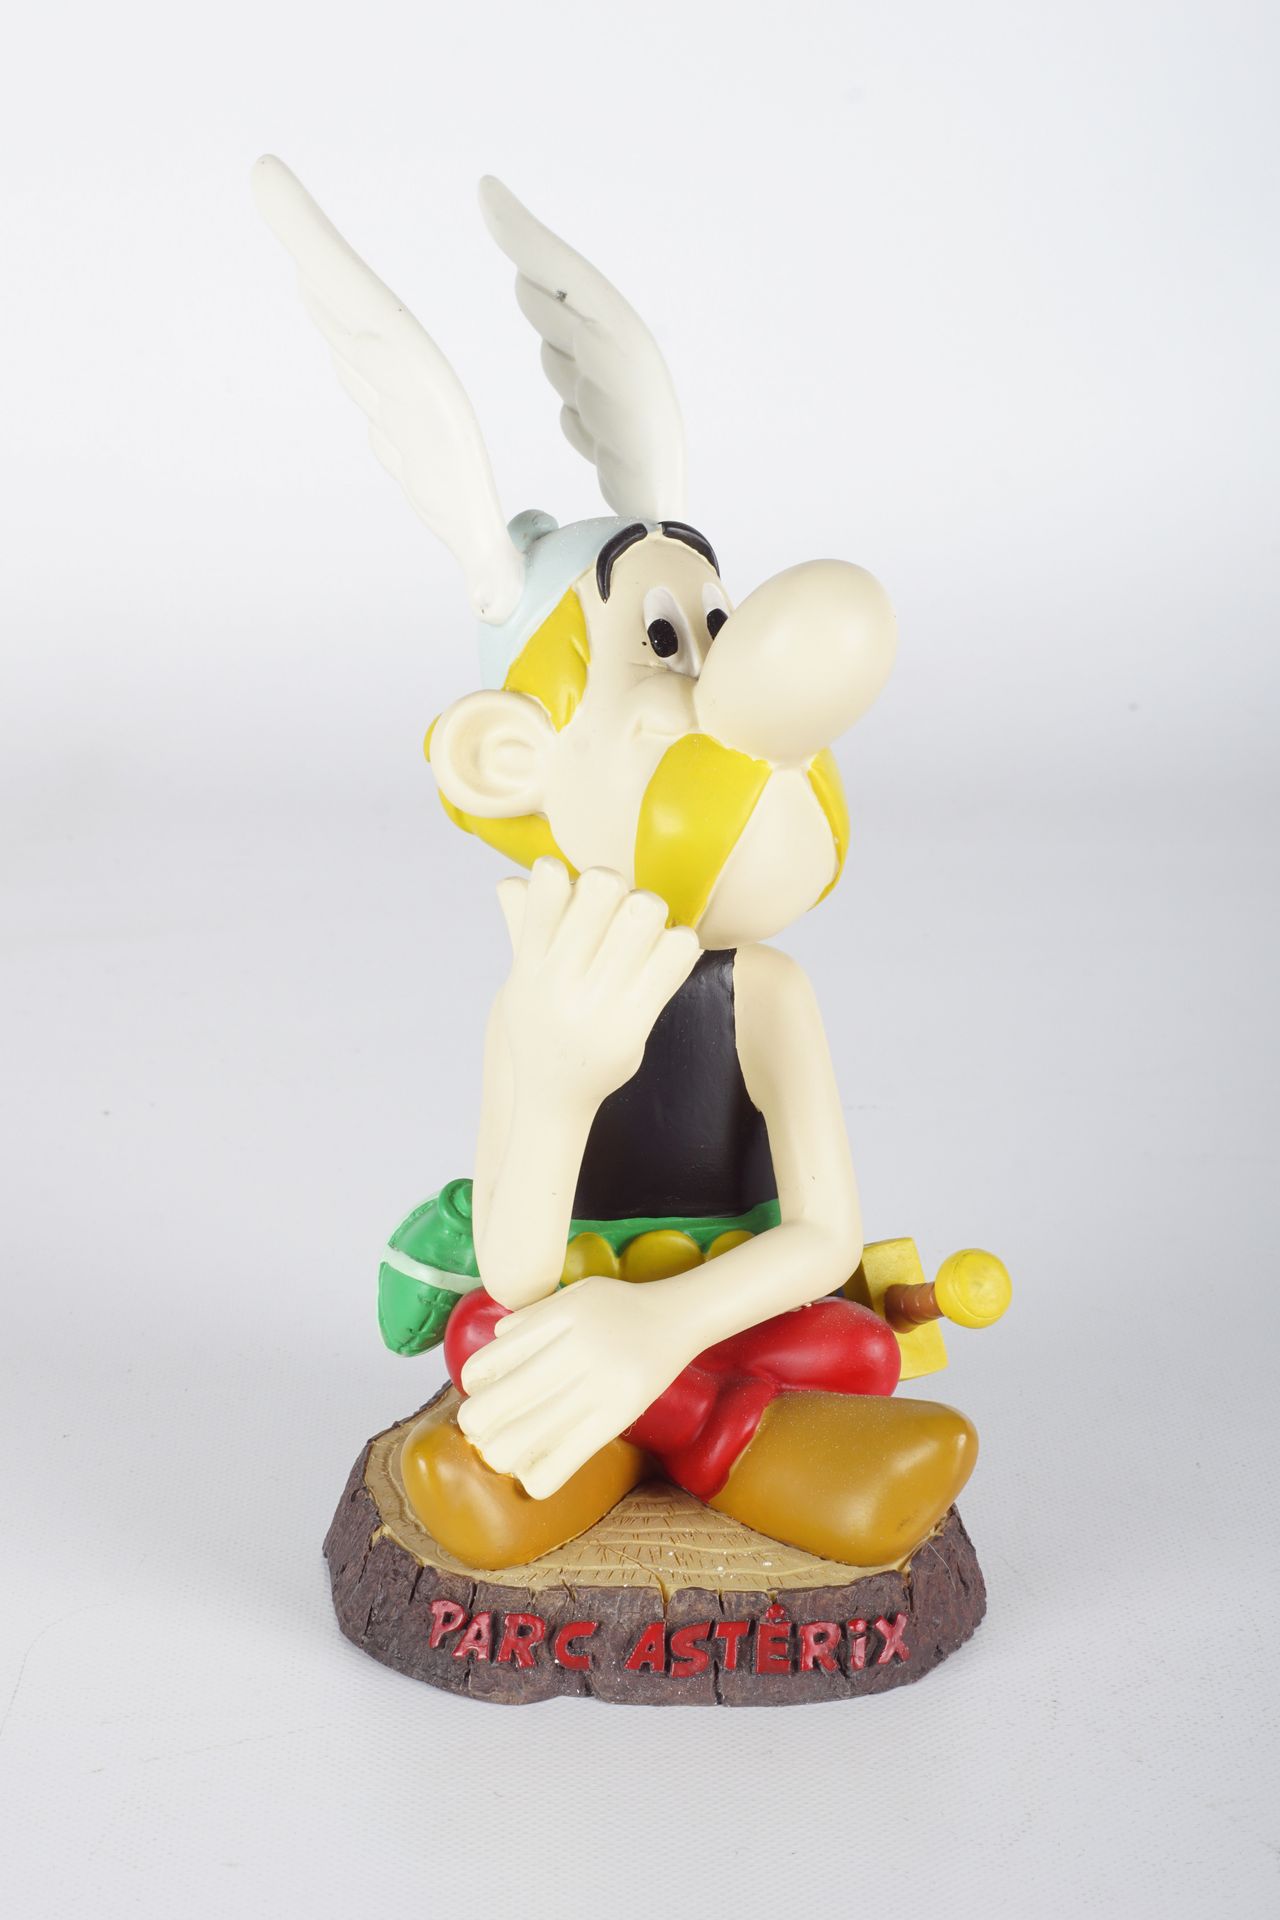 UDERZO, Albert (1927-2020) Asterix, Parc Asterix edición limitada, 2004, B